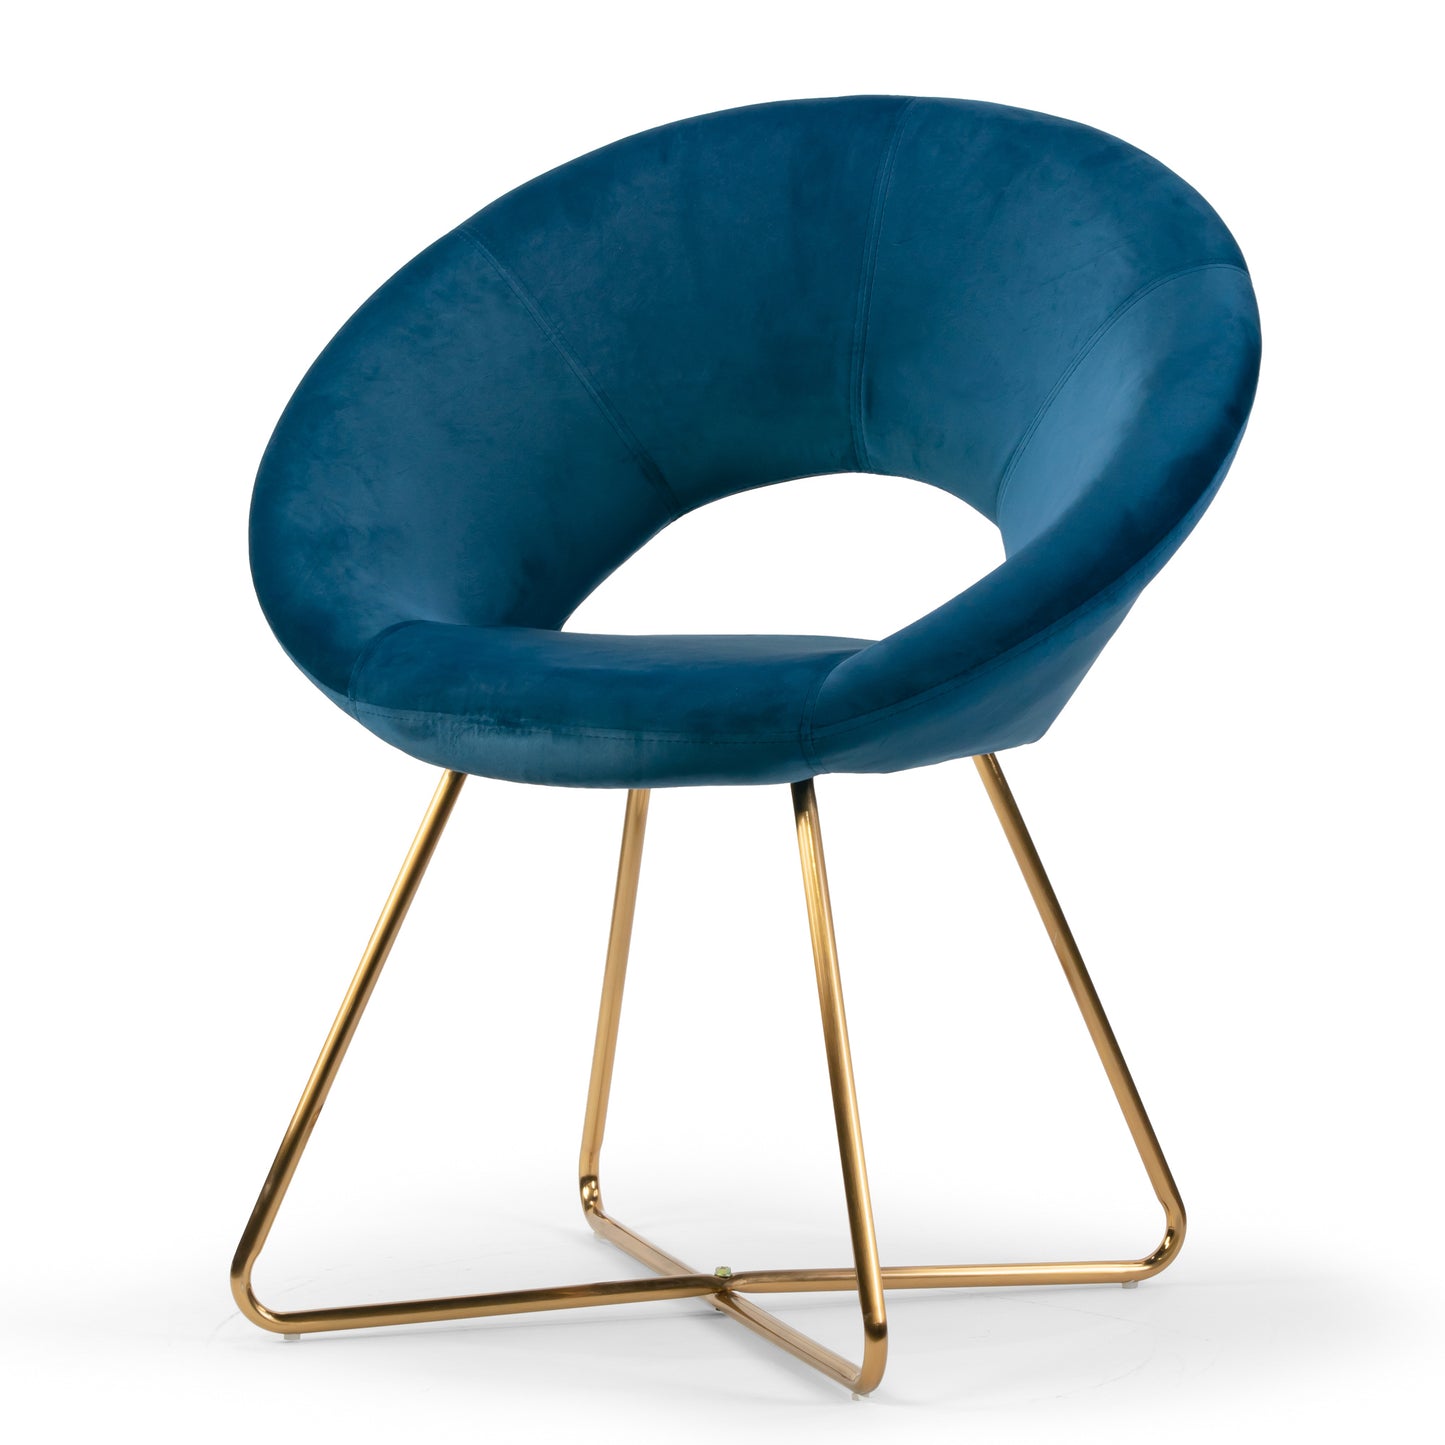 Set of 2 Amor Blue Velvet Dining Chair with Golden Metal Legs